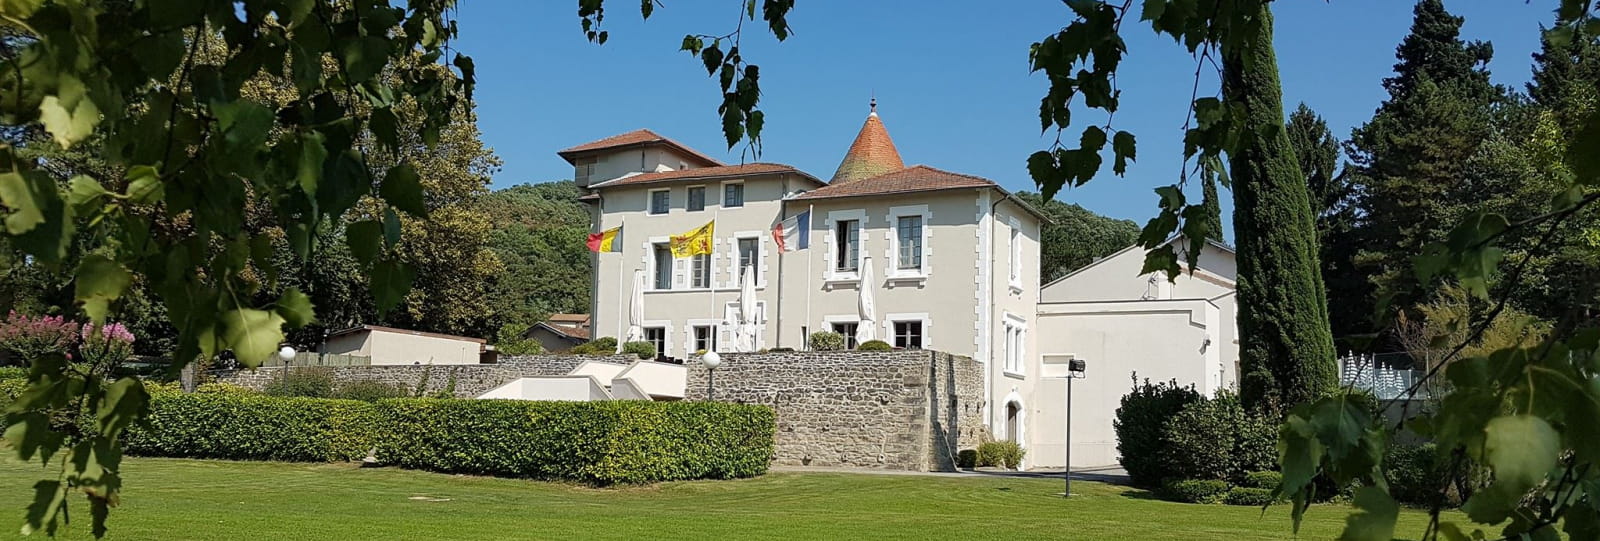 Chateau de Collonges_Saint Dona